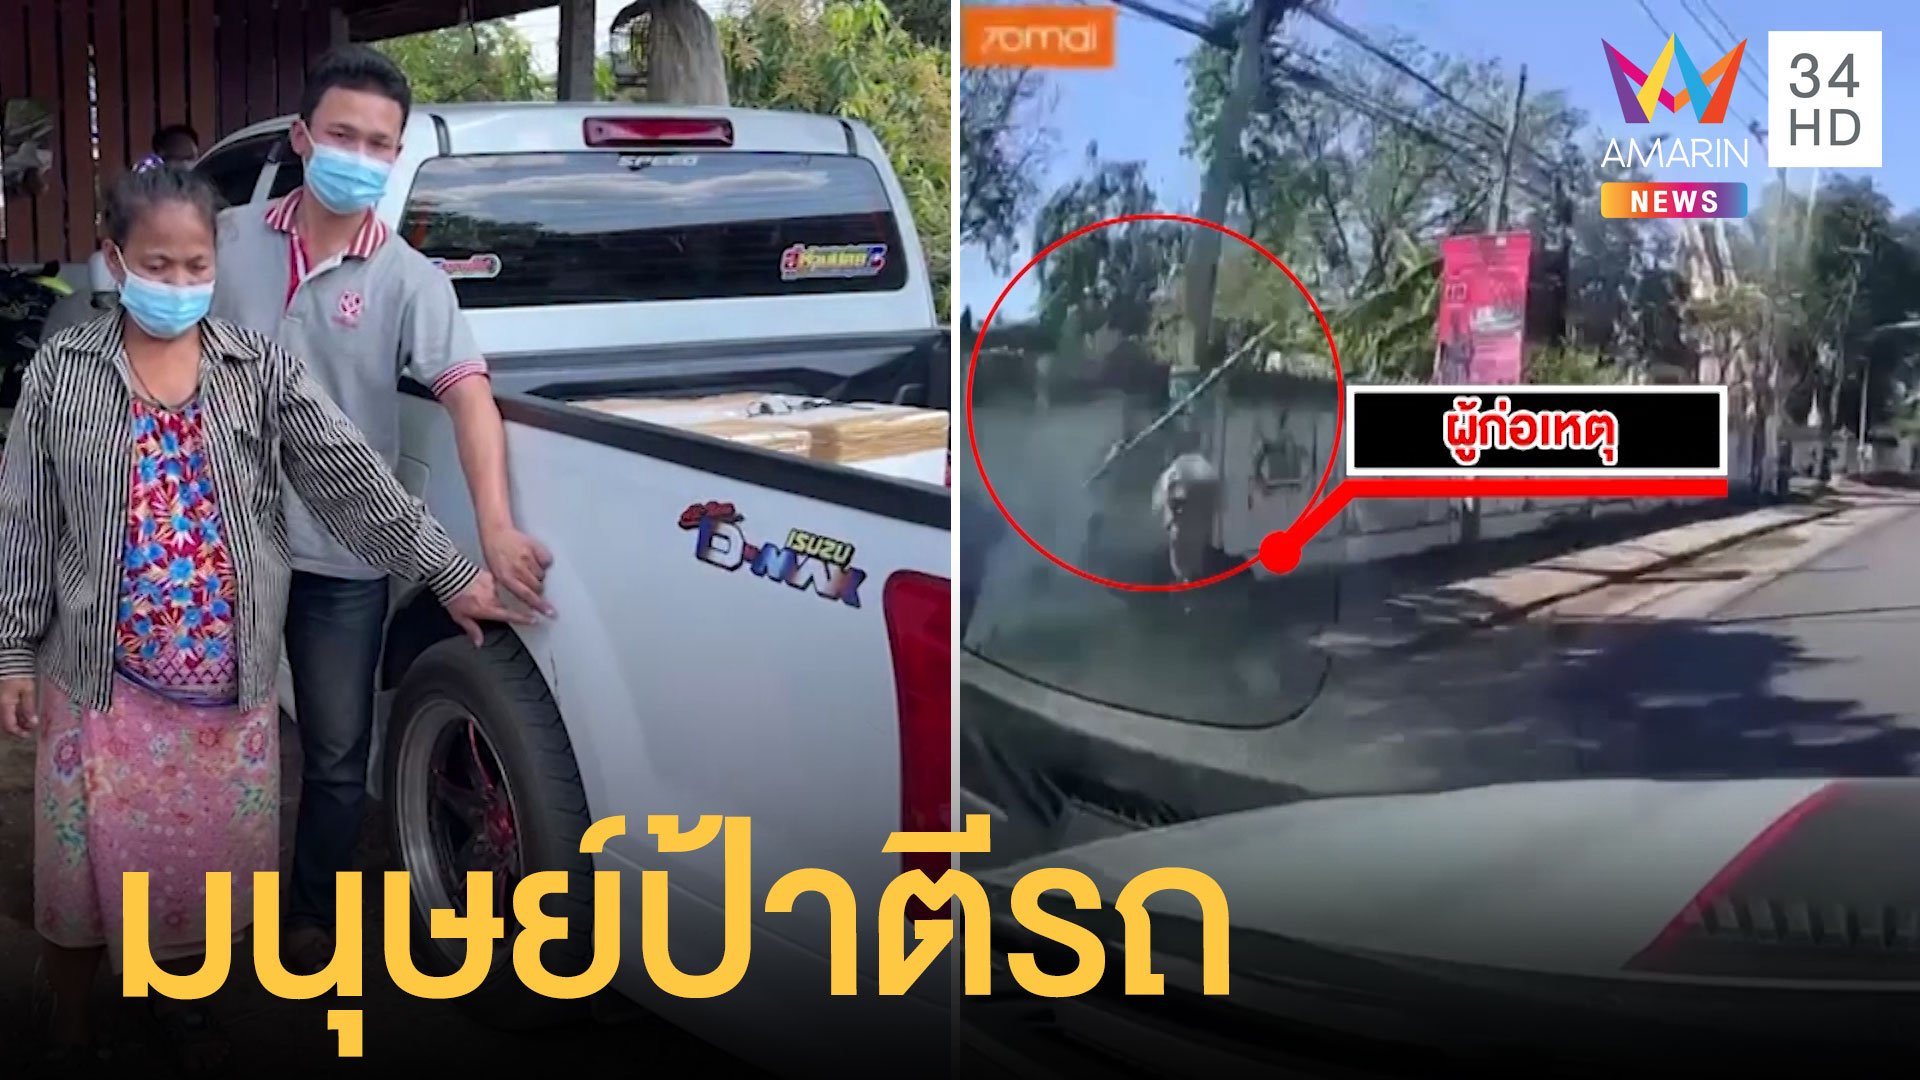 หนุ่มขับกระบะเจอมนุษย์ป้าใช้ไม้ตีรถเป็นรอย | ข่าวเที่ยงอมรินทร์ | 21 ม.ค. 65 | AMARIN TVHD34